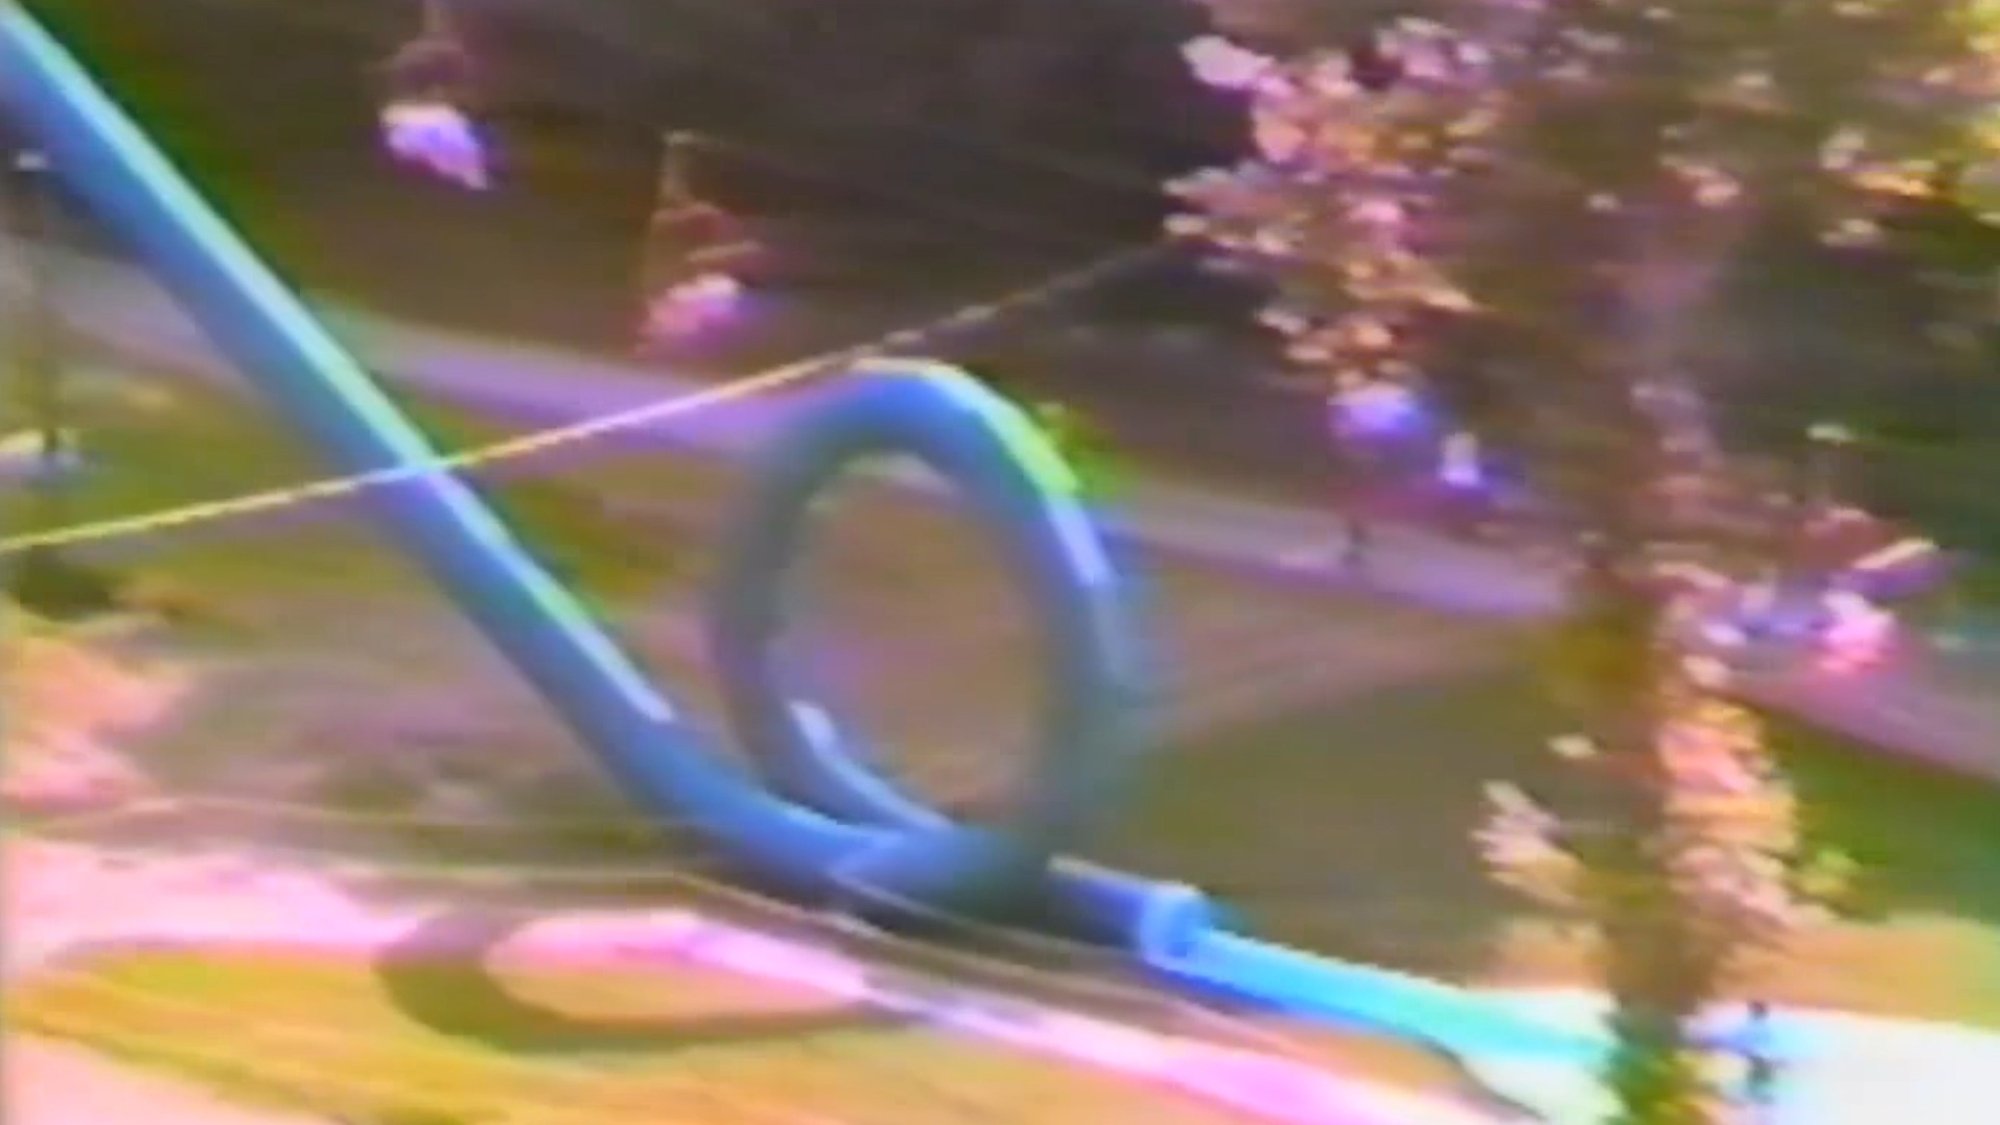 A blue water slide that goes in a loop the loop